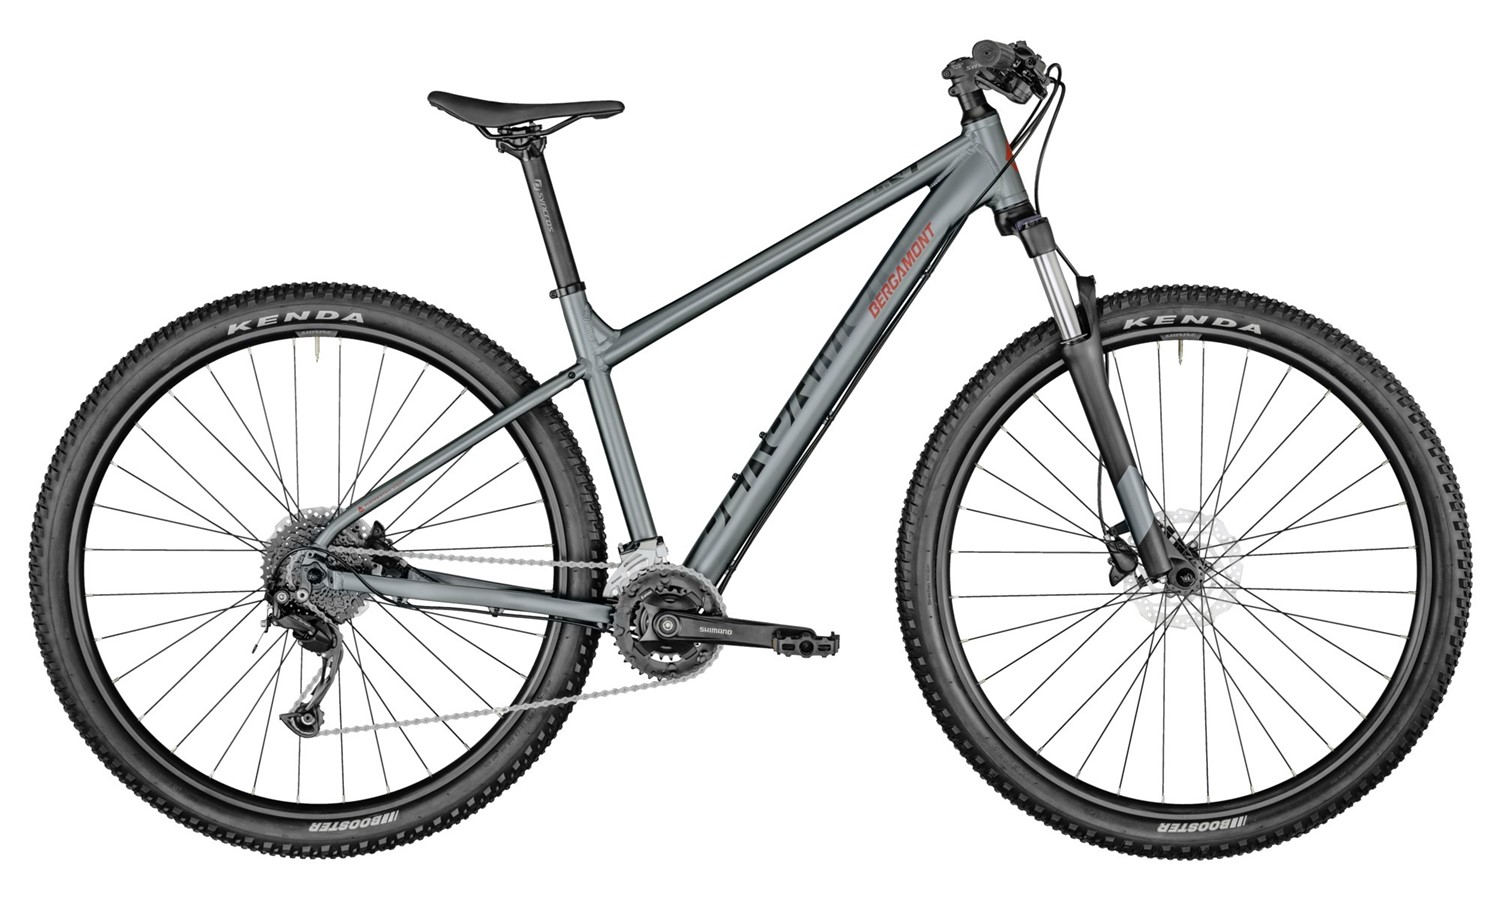  Отзывы о Горном велосипеде Bergamont Revox 4 29 2021